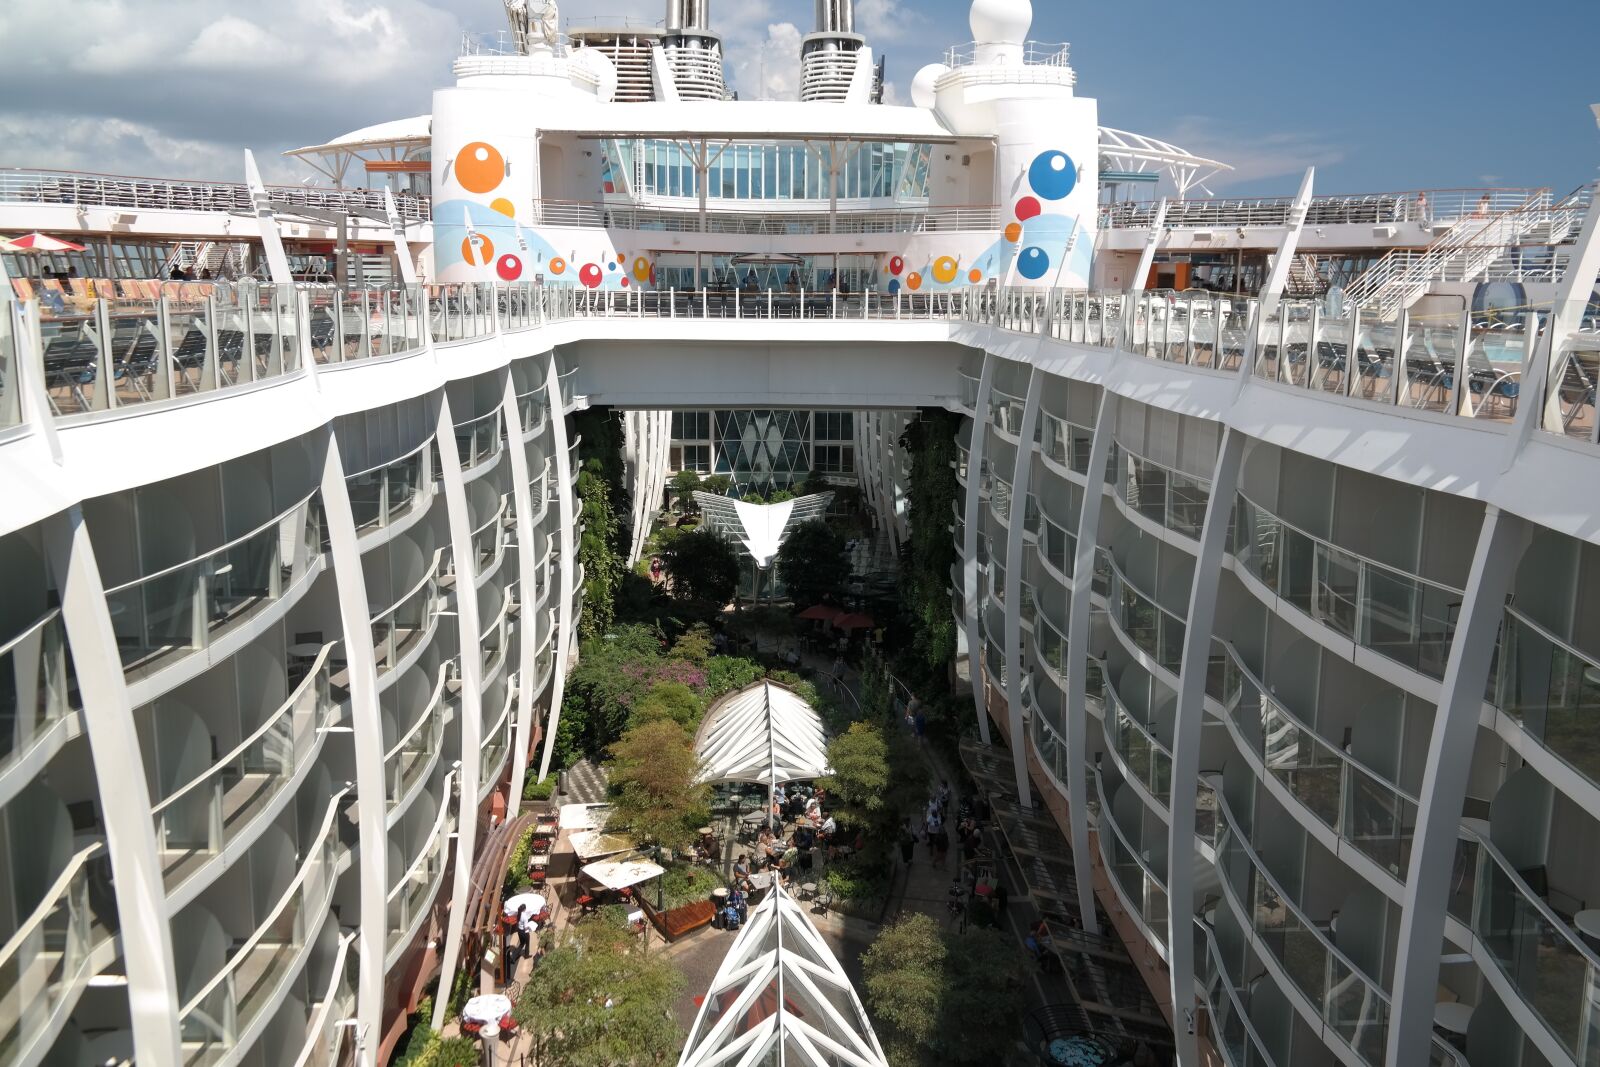 Samsung NX300 sample photo. Cruise ship, vacations, lake photography